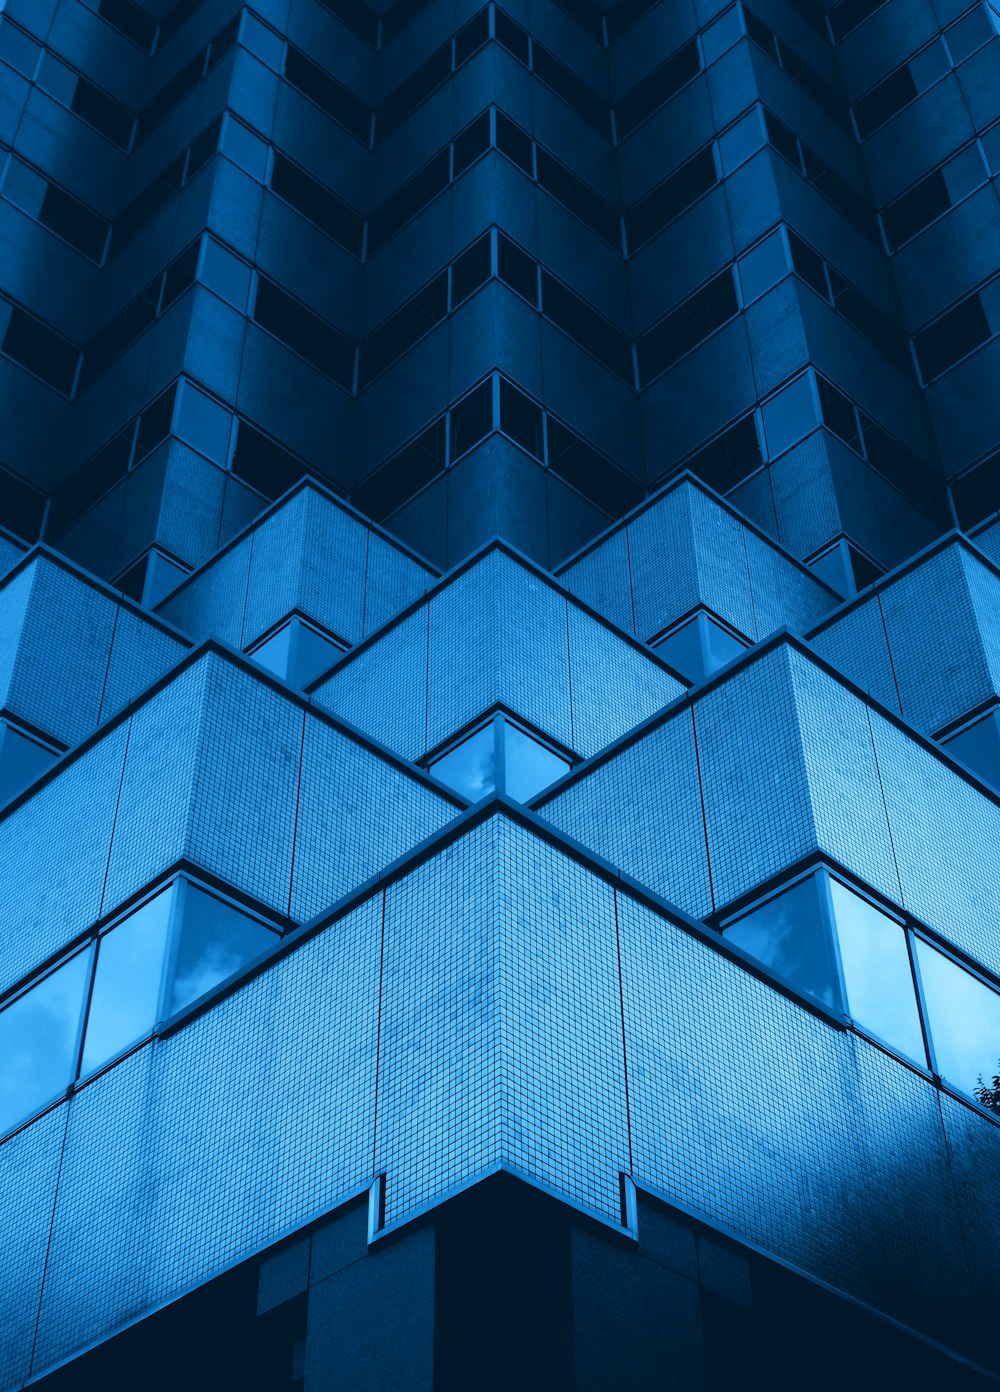 edifício com paredes de vidro azul e branco